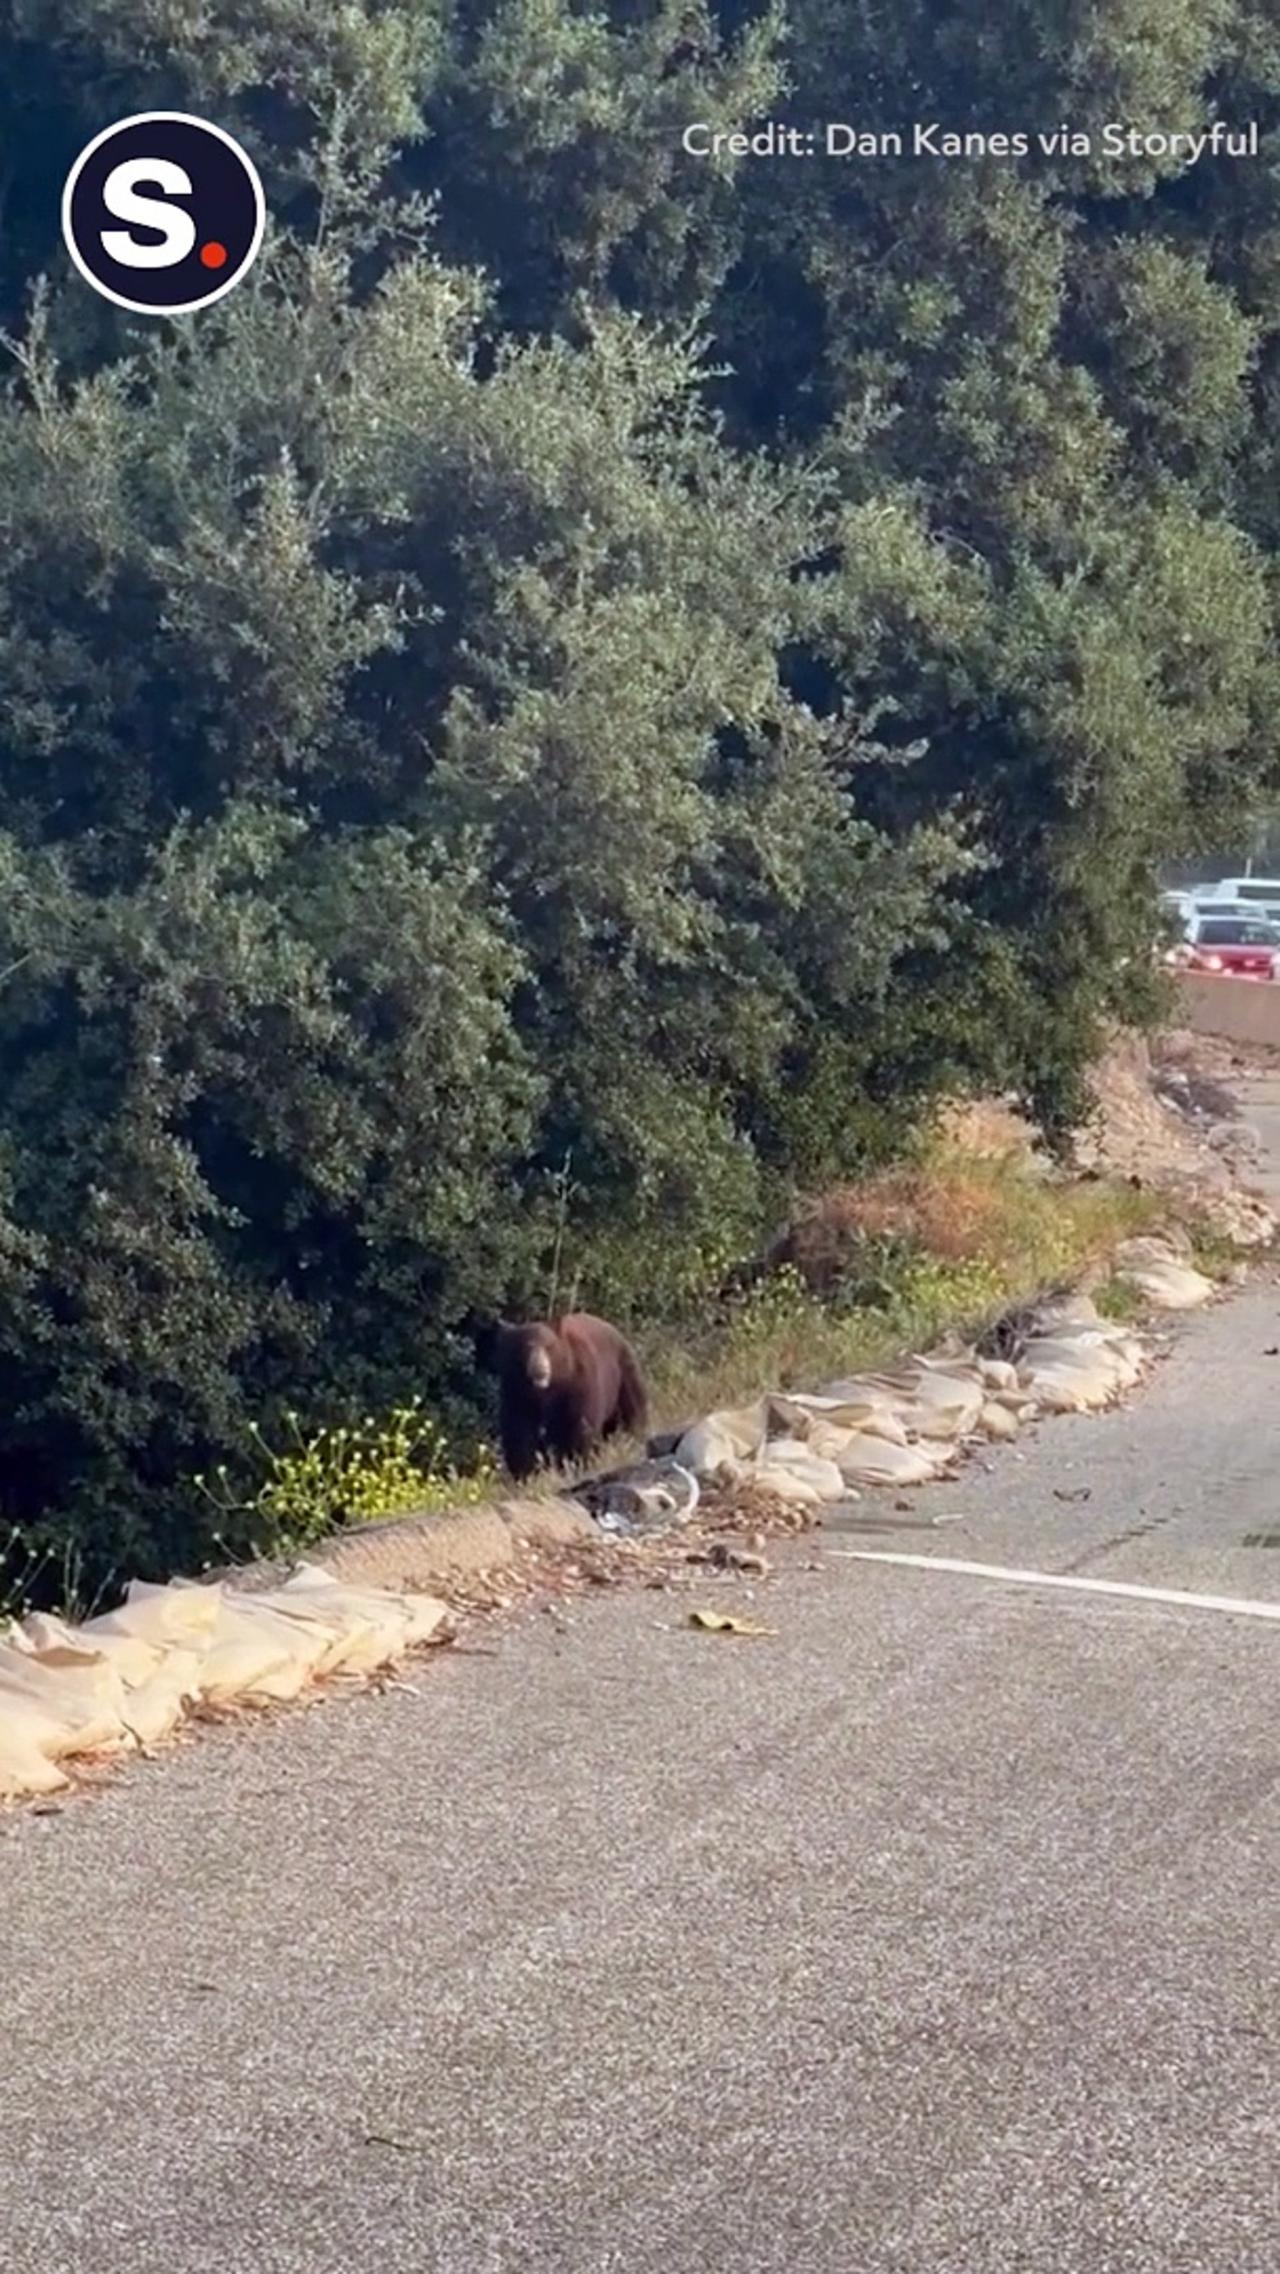 Bear Brings Traffic to a Halt on California Freeway